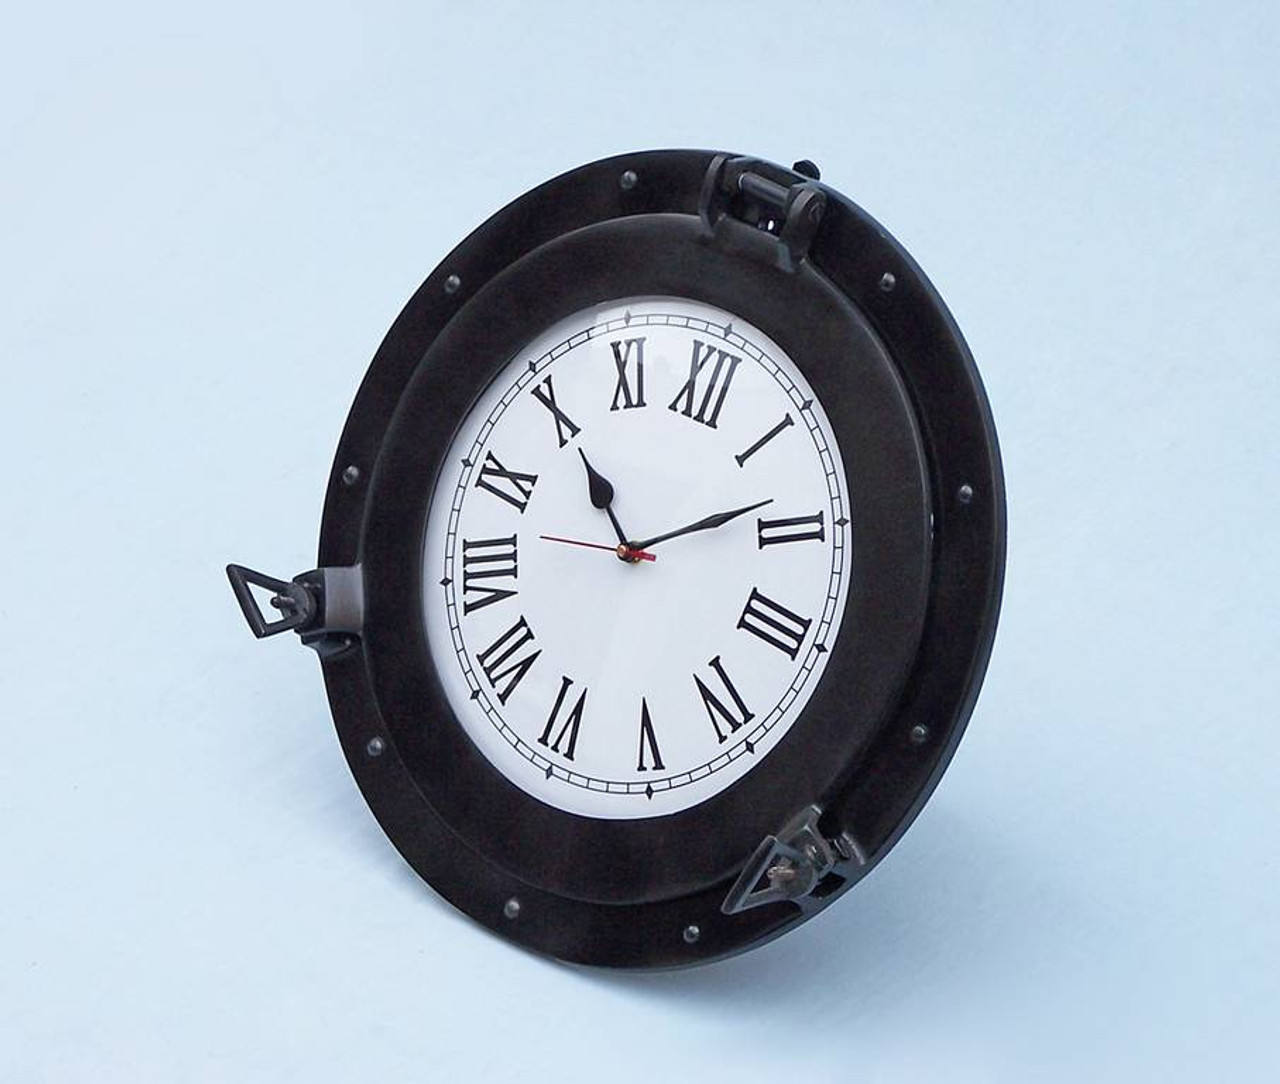 Ships Porthole Clock Black Finish Nautical Wall Decor